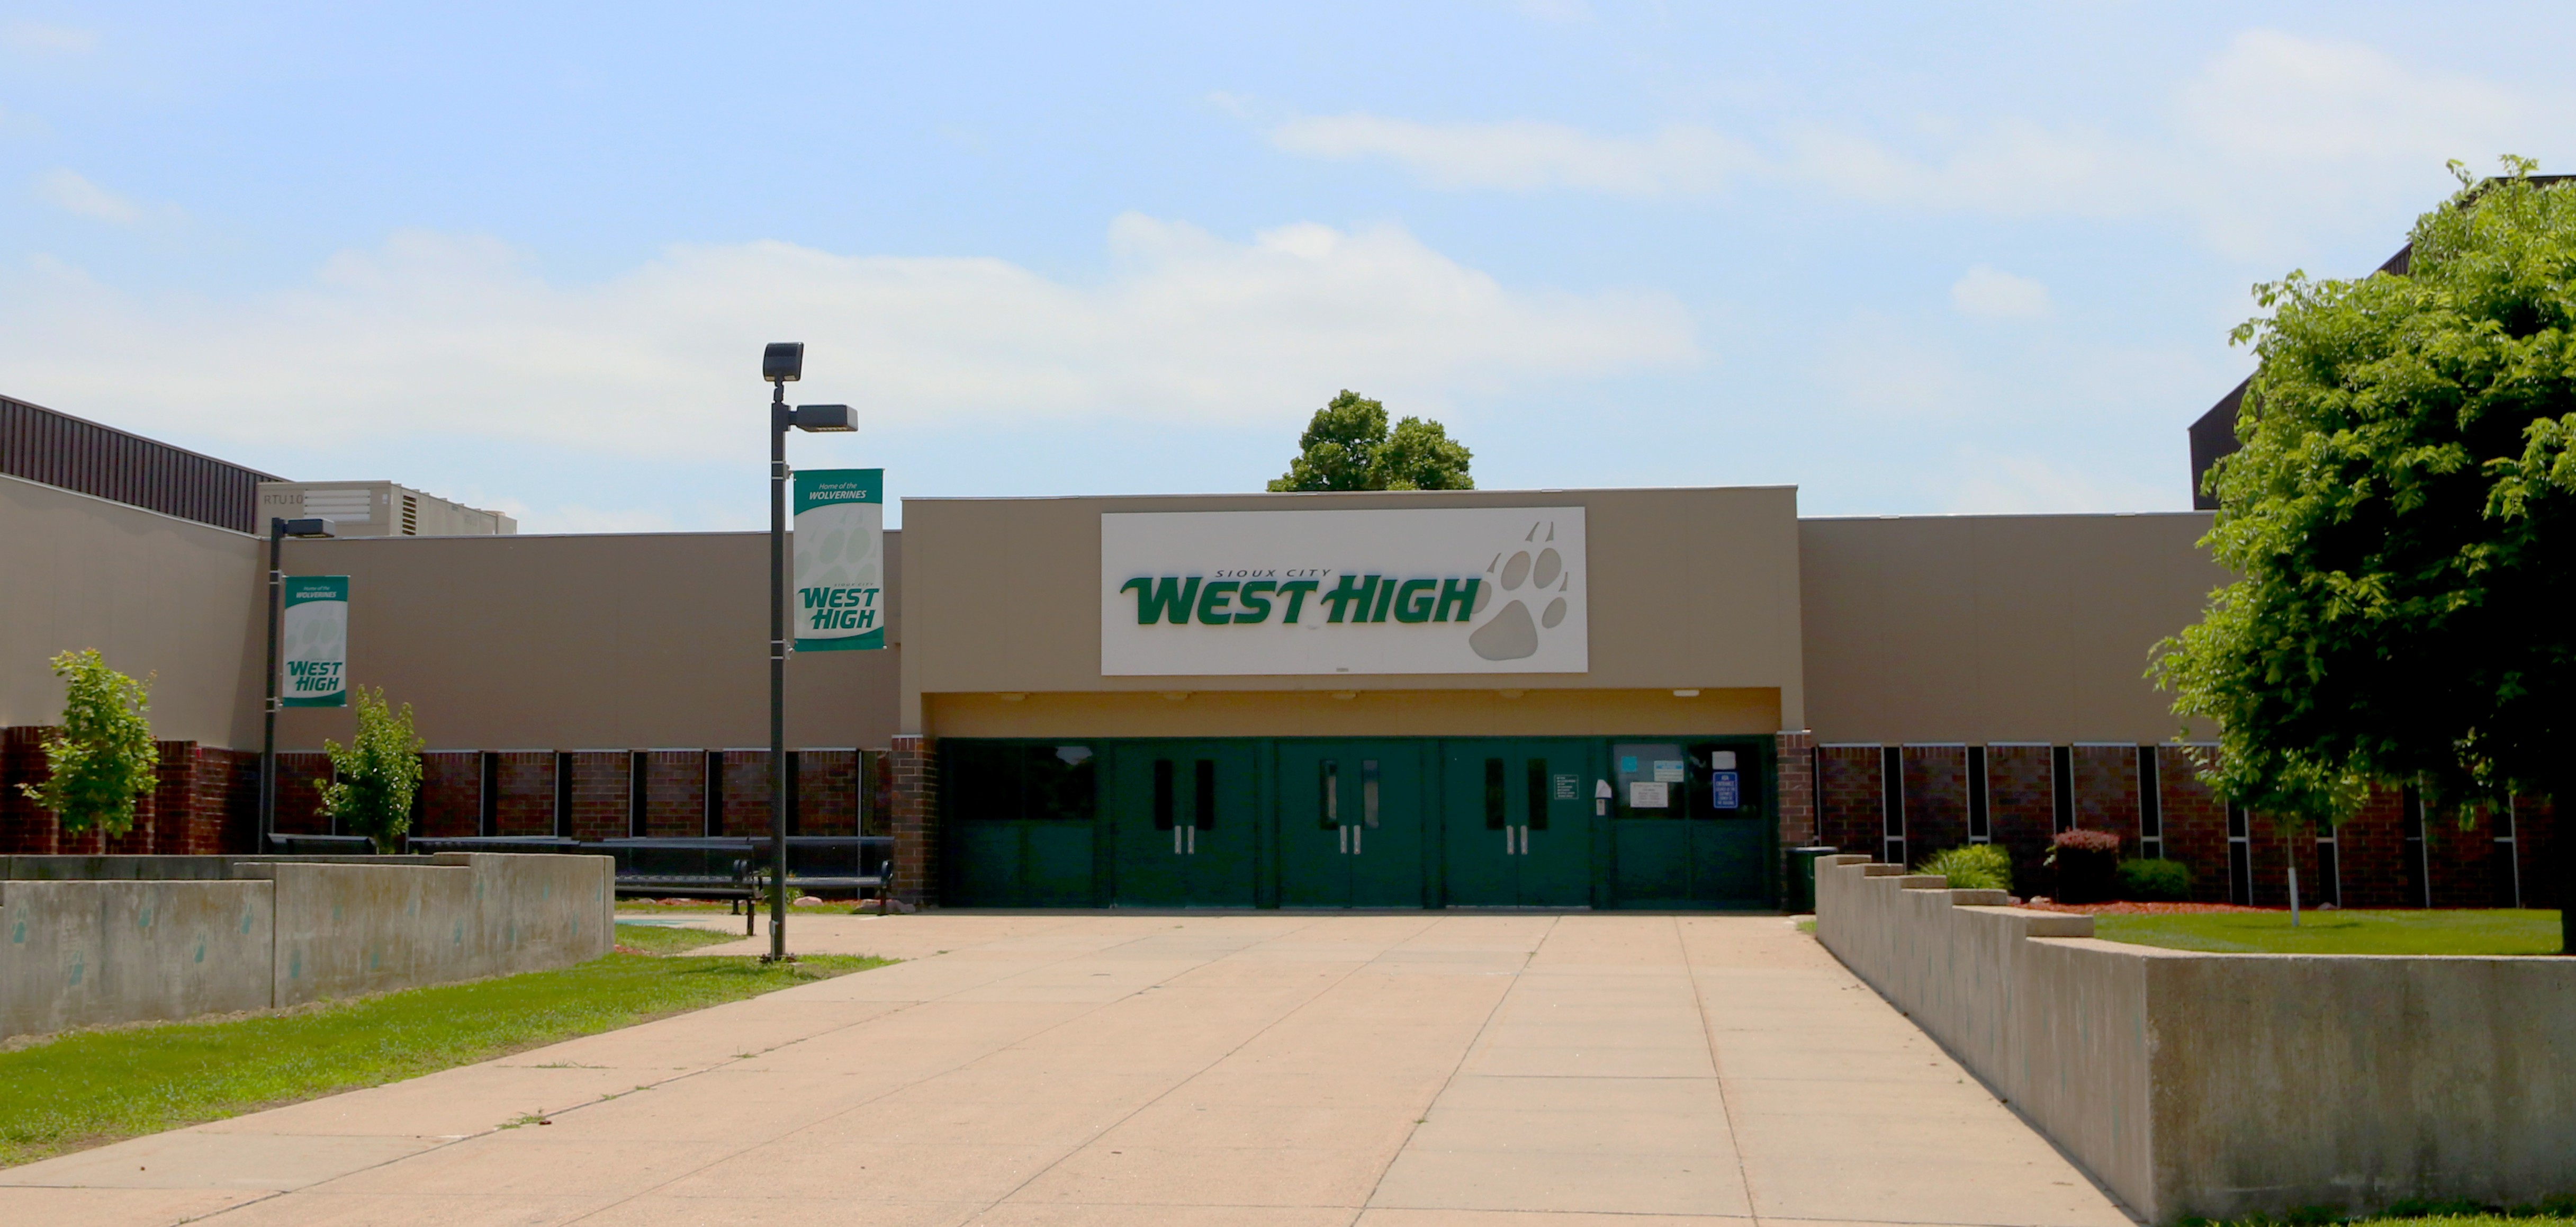 Exterior of school West High School building